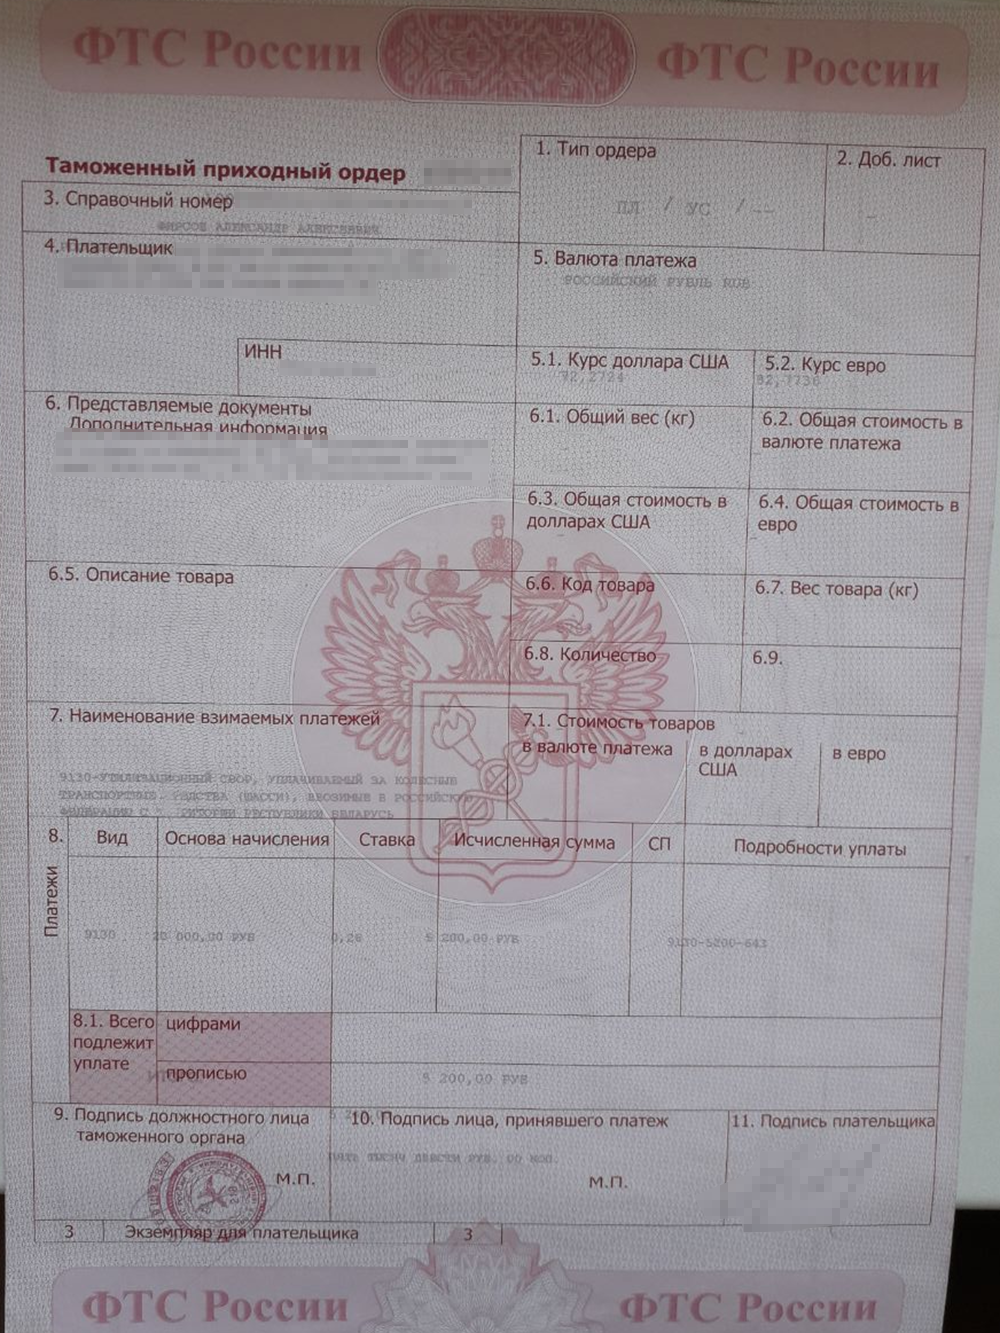 Таможенный приходный ордер — документ, который подтверждает факт таможенного оформления на территории РФ